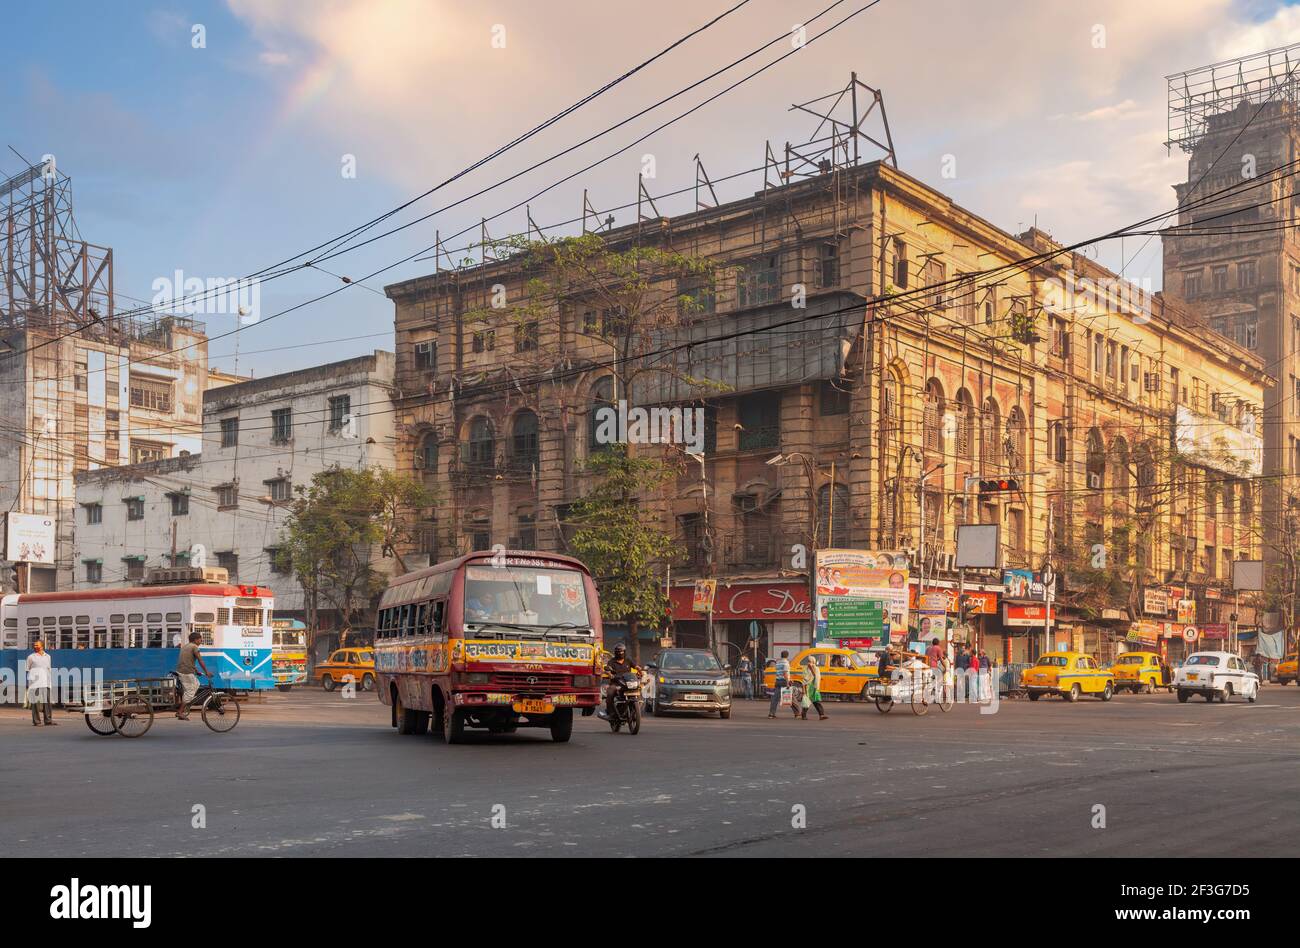 Intersezione stradale della città con i mezzi di trasporto pubblico e vista degli edifici degli uffici nella zona Chandni Chowk di Kolkata, India Foto Stock